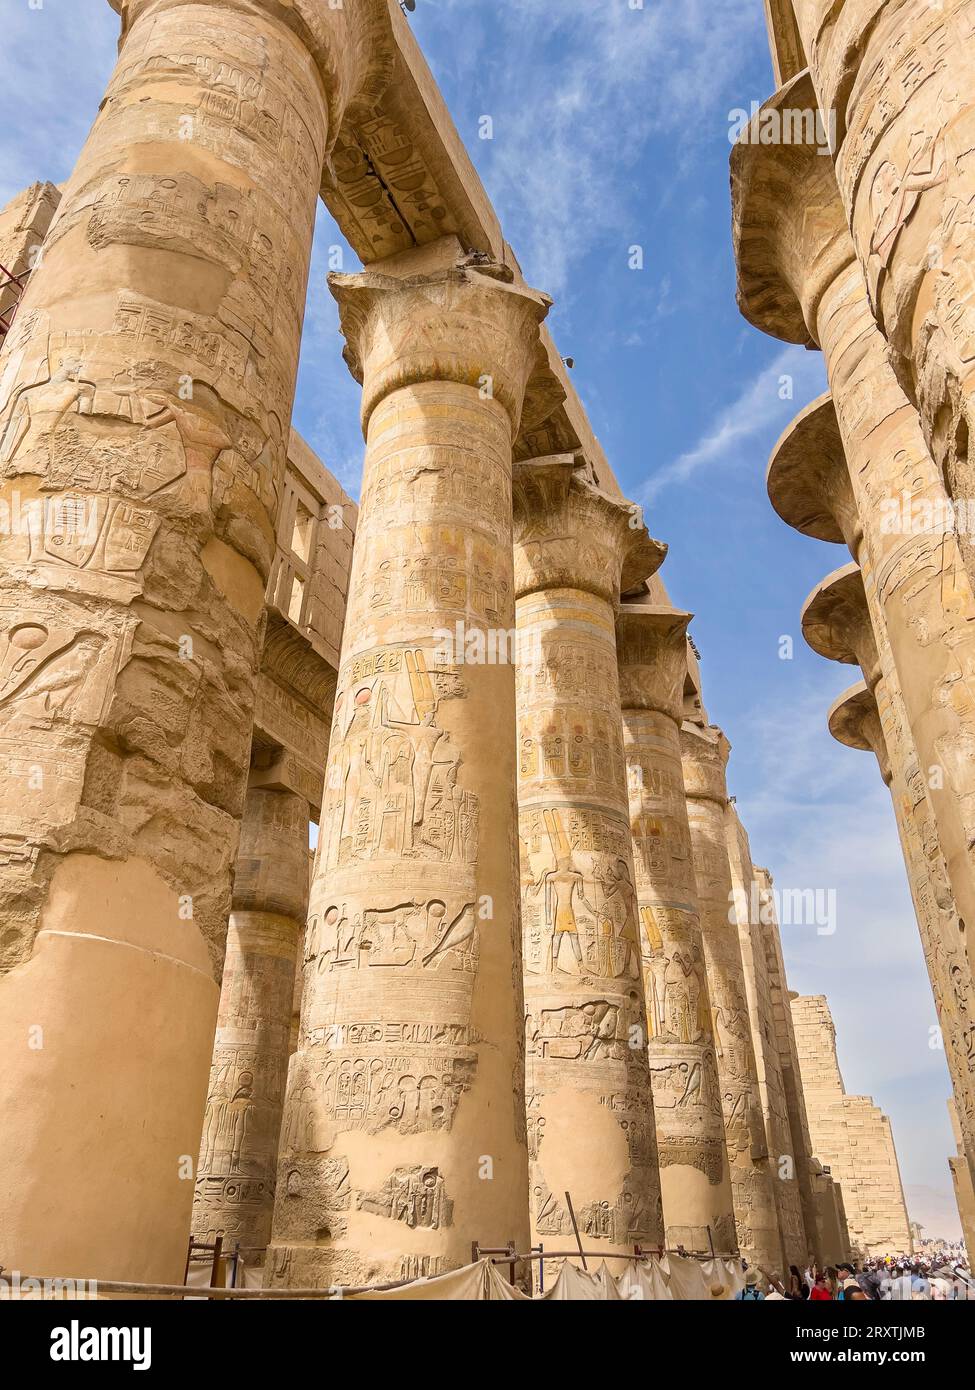 Le Grand Hypostyle Hall, complexe du temple de Karnak, un vaste mélange de temples, pylônes et chapelles, site du patrimoine mondial de l'UNESCO, près de Louxor, Thèbes Banque D'Images